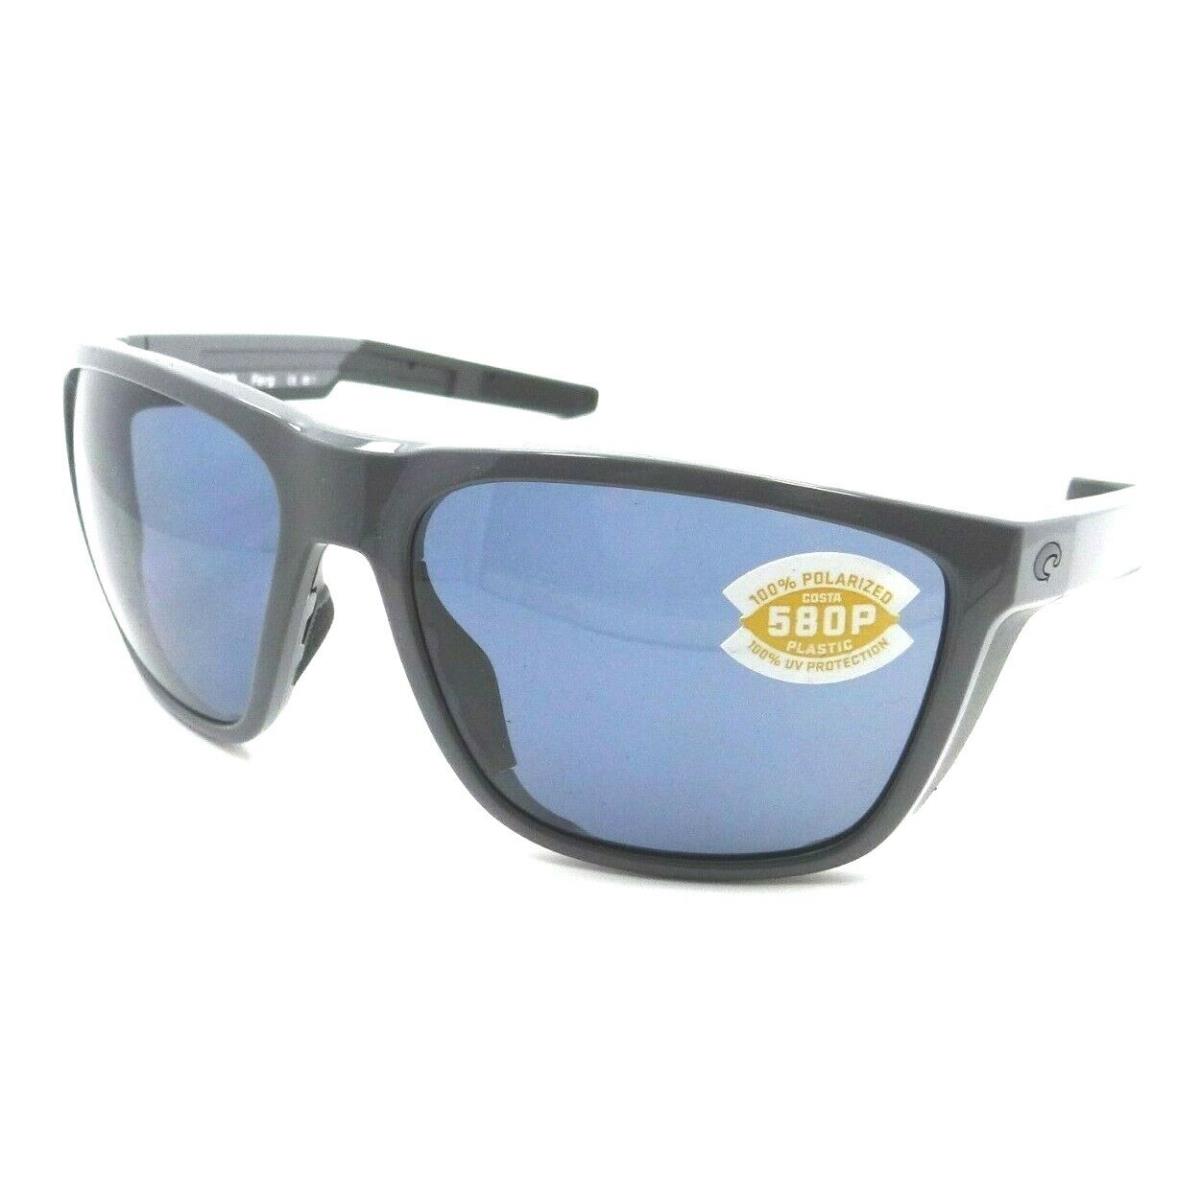 Costa Del Mar Sunglasses Ferg 59-16-125 Shiny Gray / Gray 580P - Gray Frame, Gray Lens